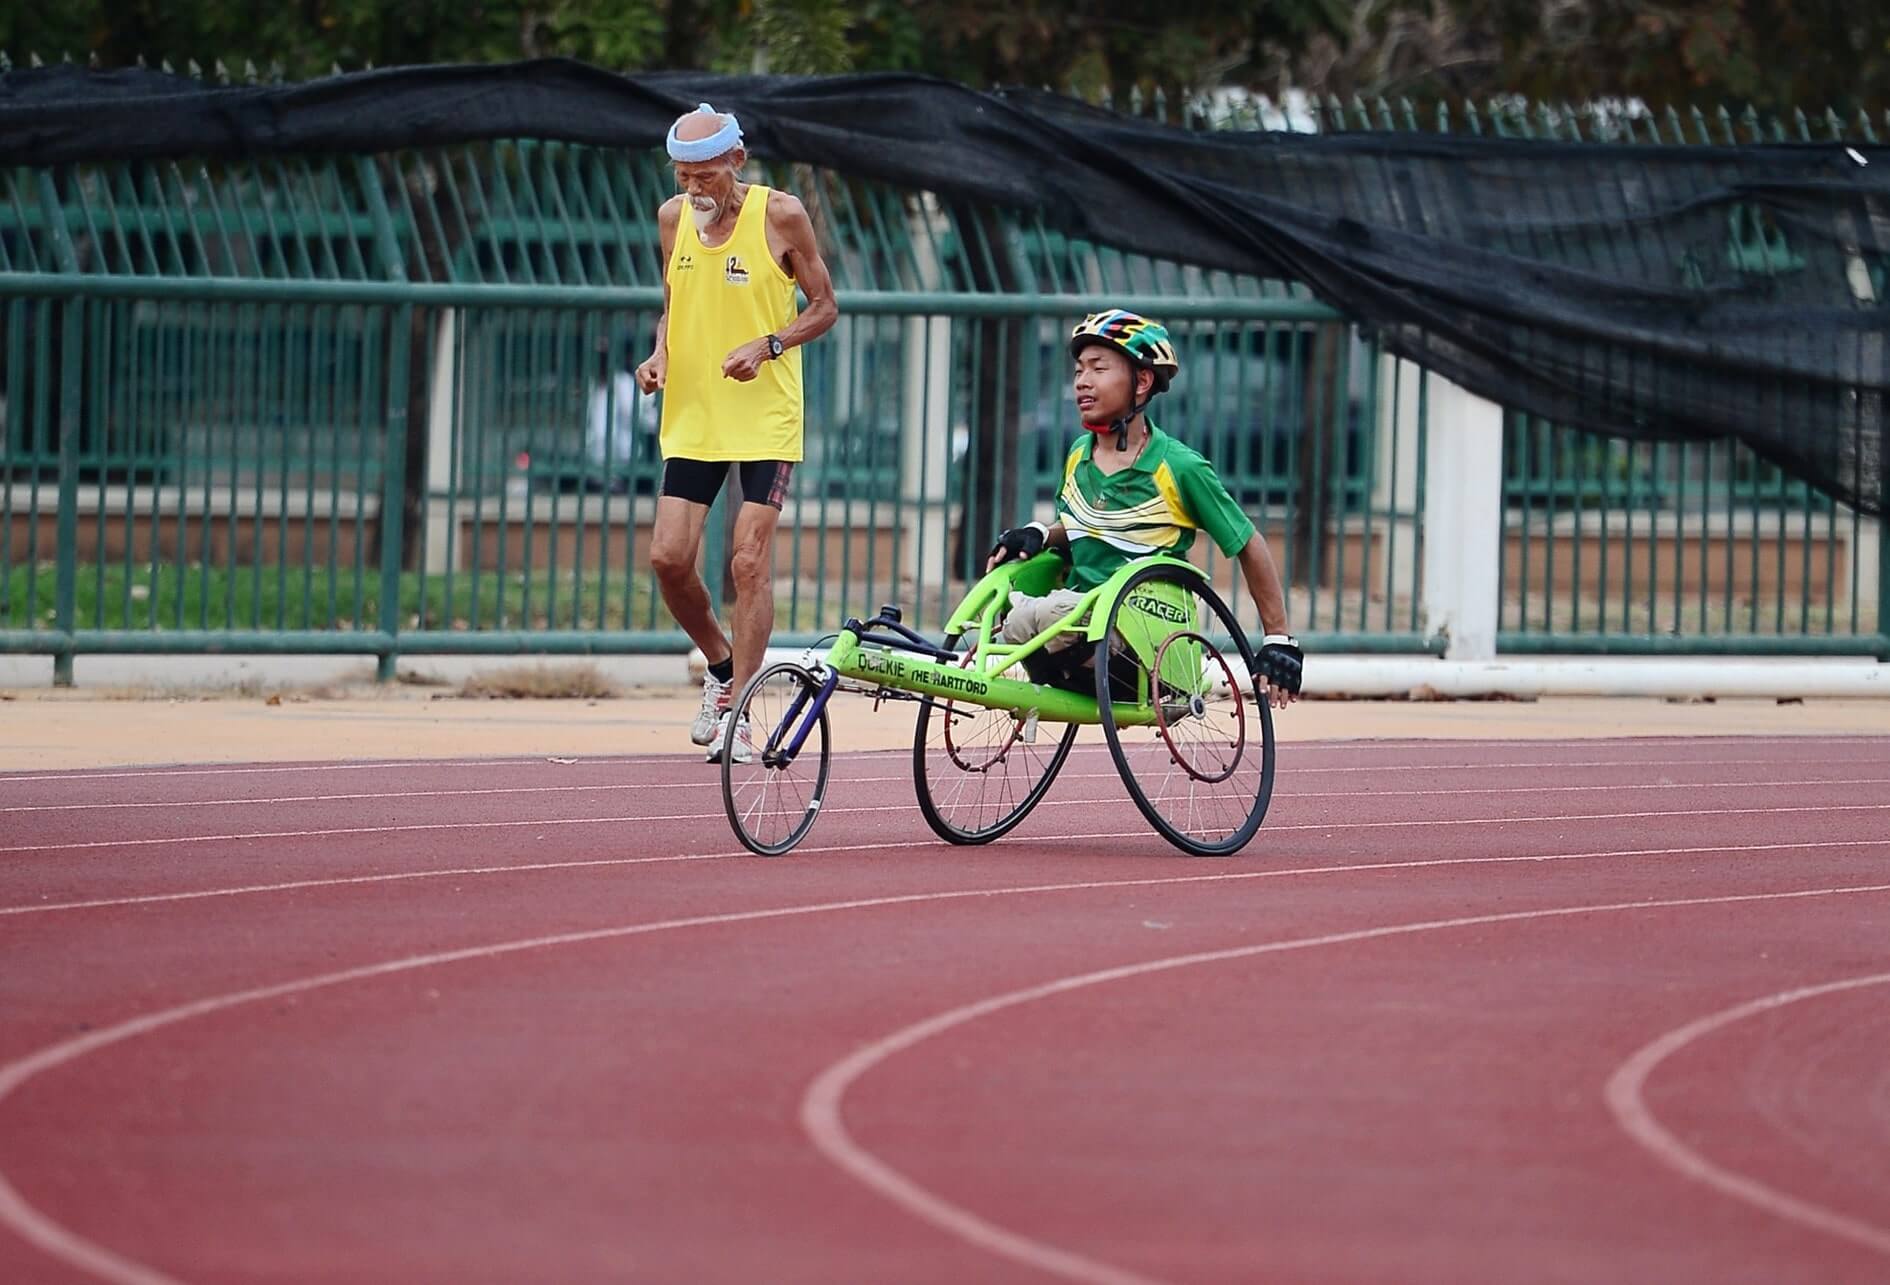 Sur une piste d’athlétisme, 2 coureurs, l’un d’un âge vénérable, l’autre en fauteuil roulant sport